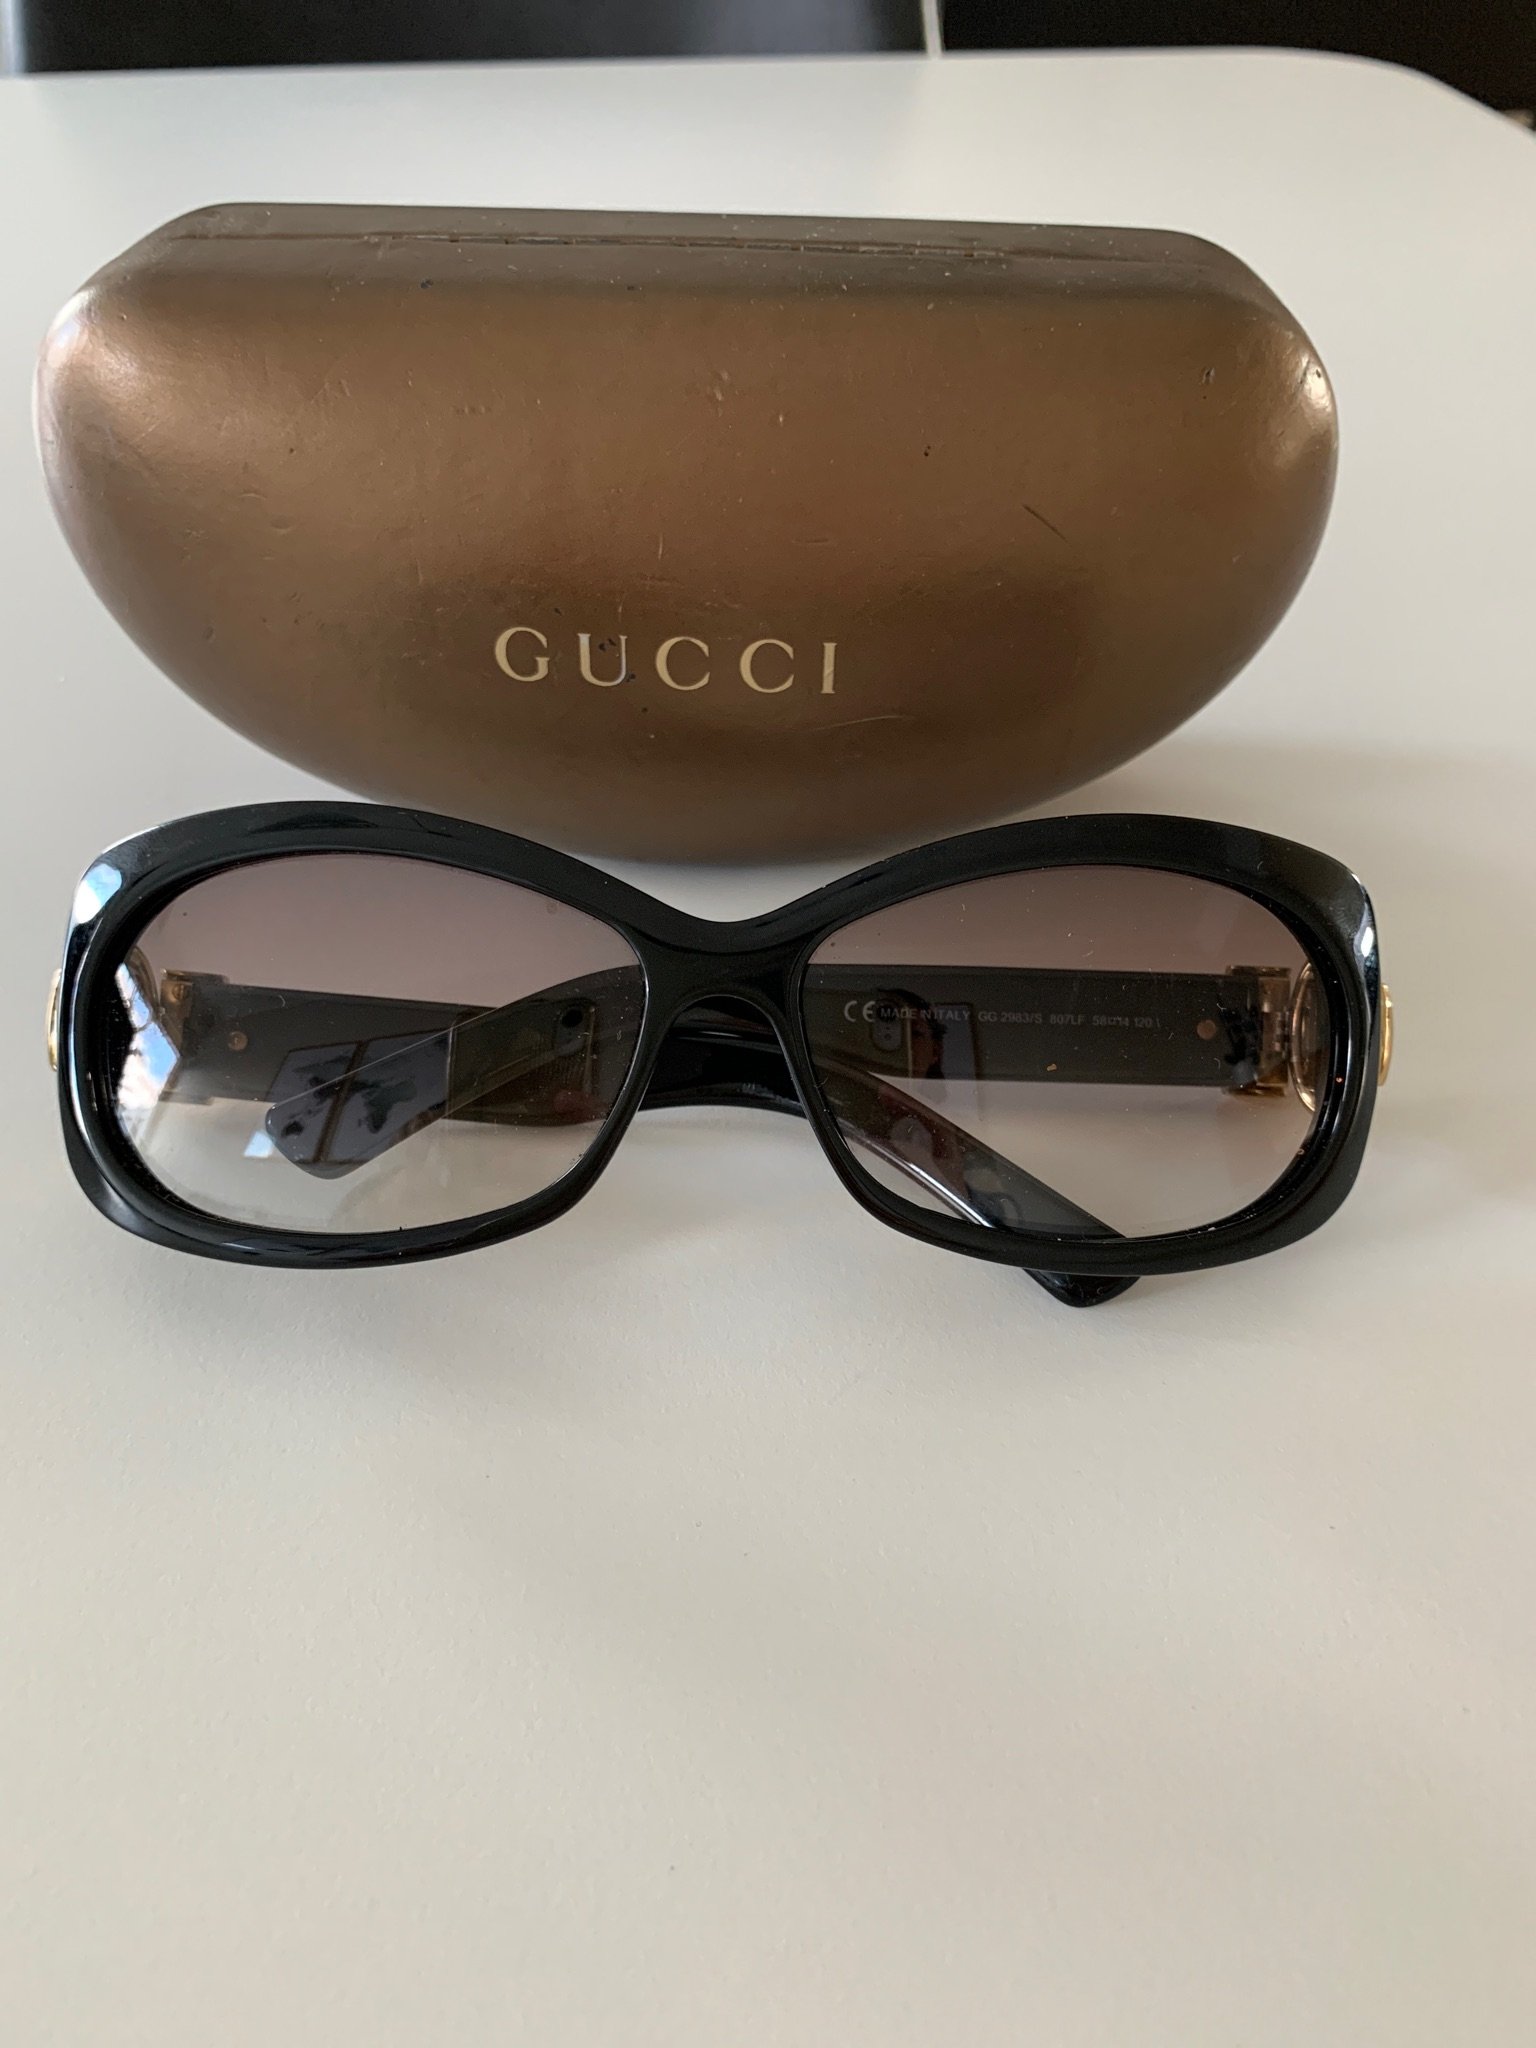 Gucci solbriller, 400 kr.